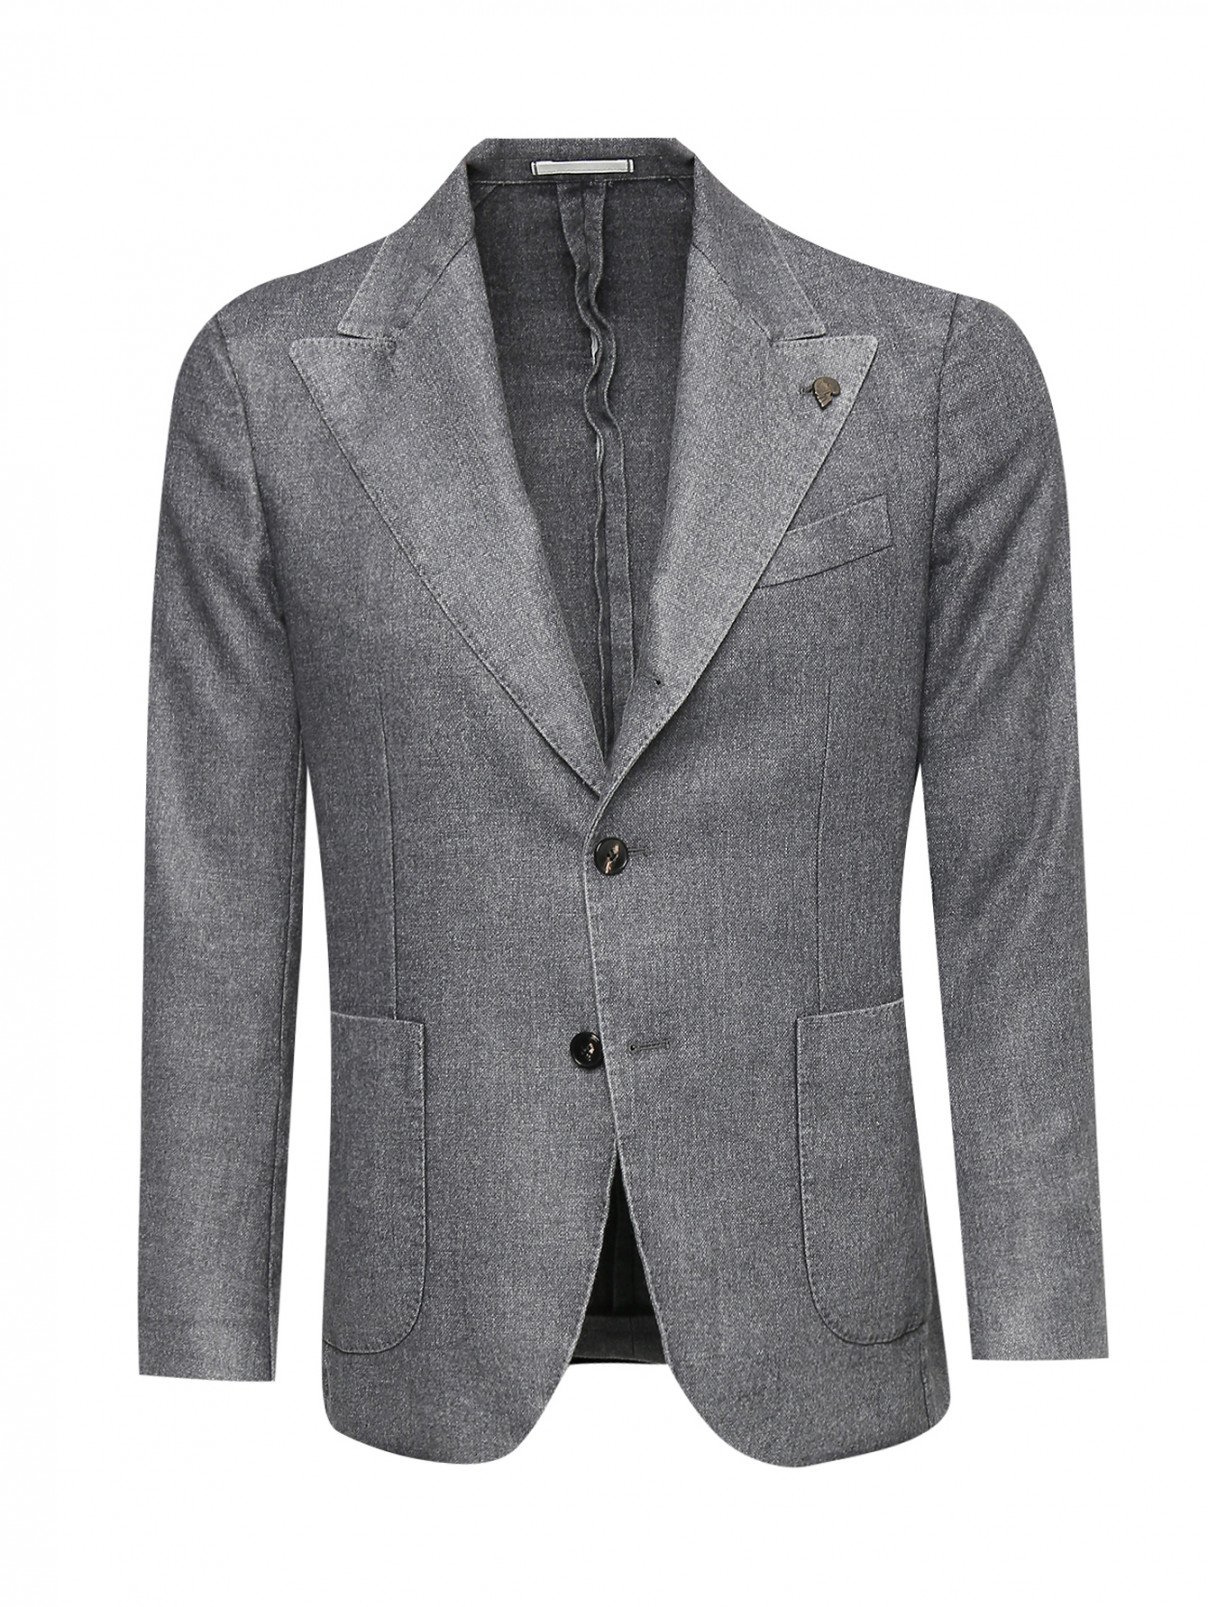 Пиджак из кашемира с накладными карманами Gabriele Pasini  –  Общий вид  – Цвет:  Серый